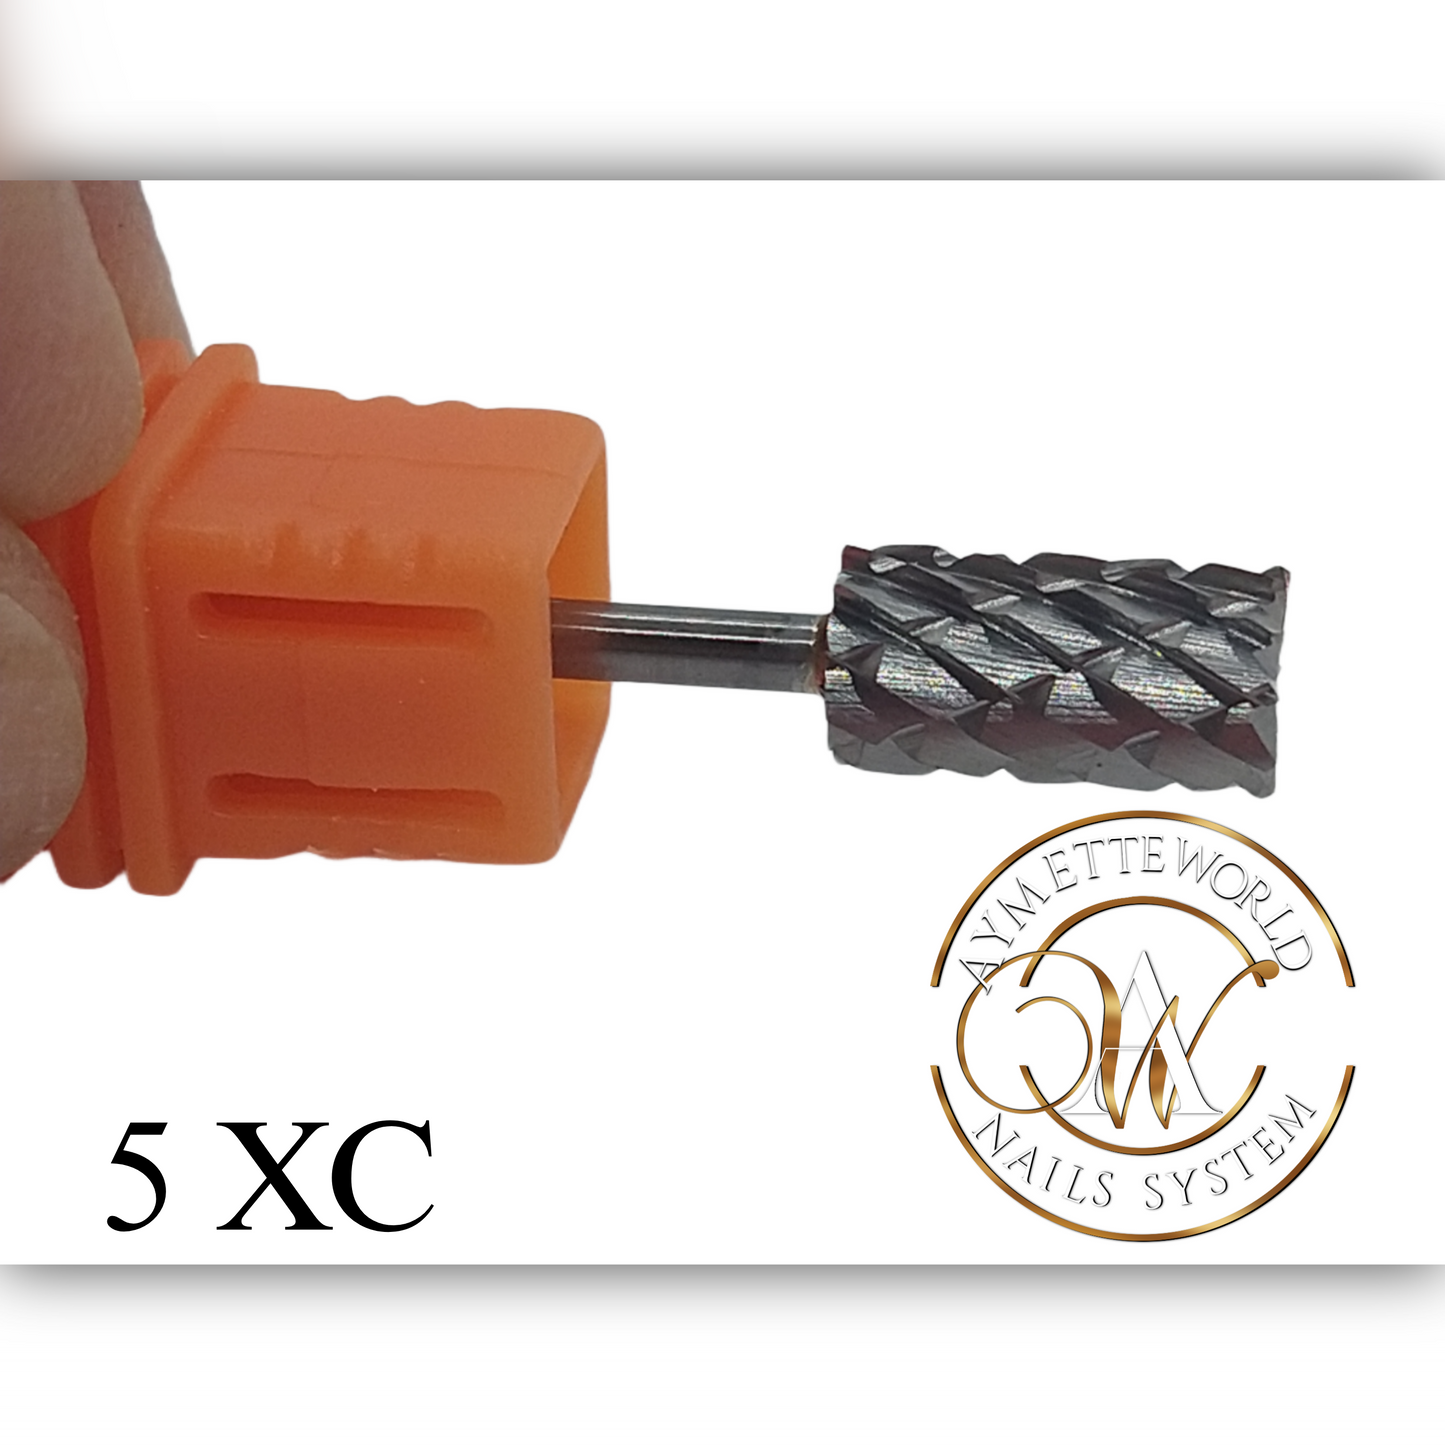 Nail drill bits 5XC